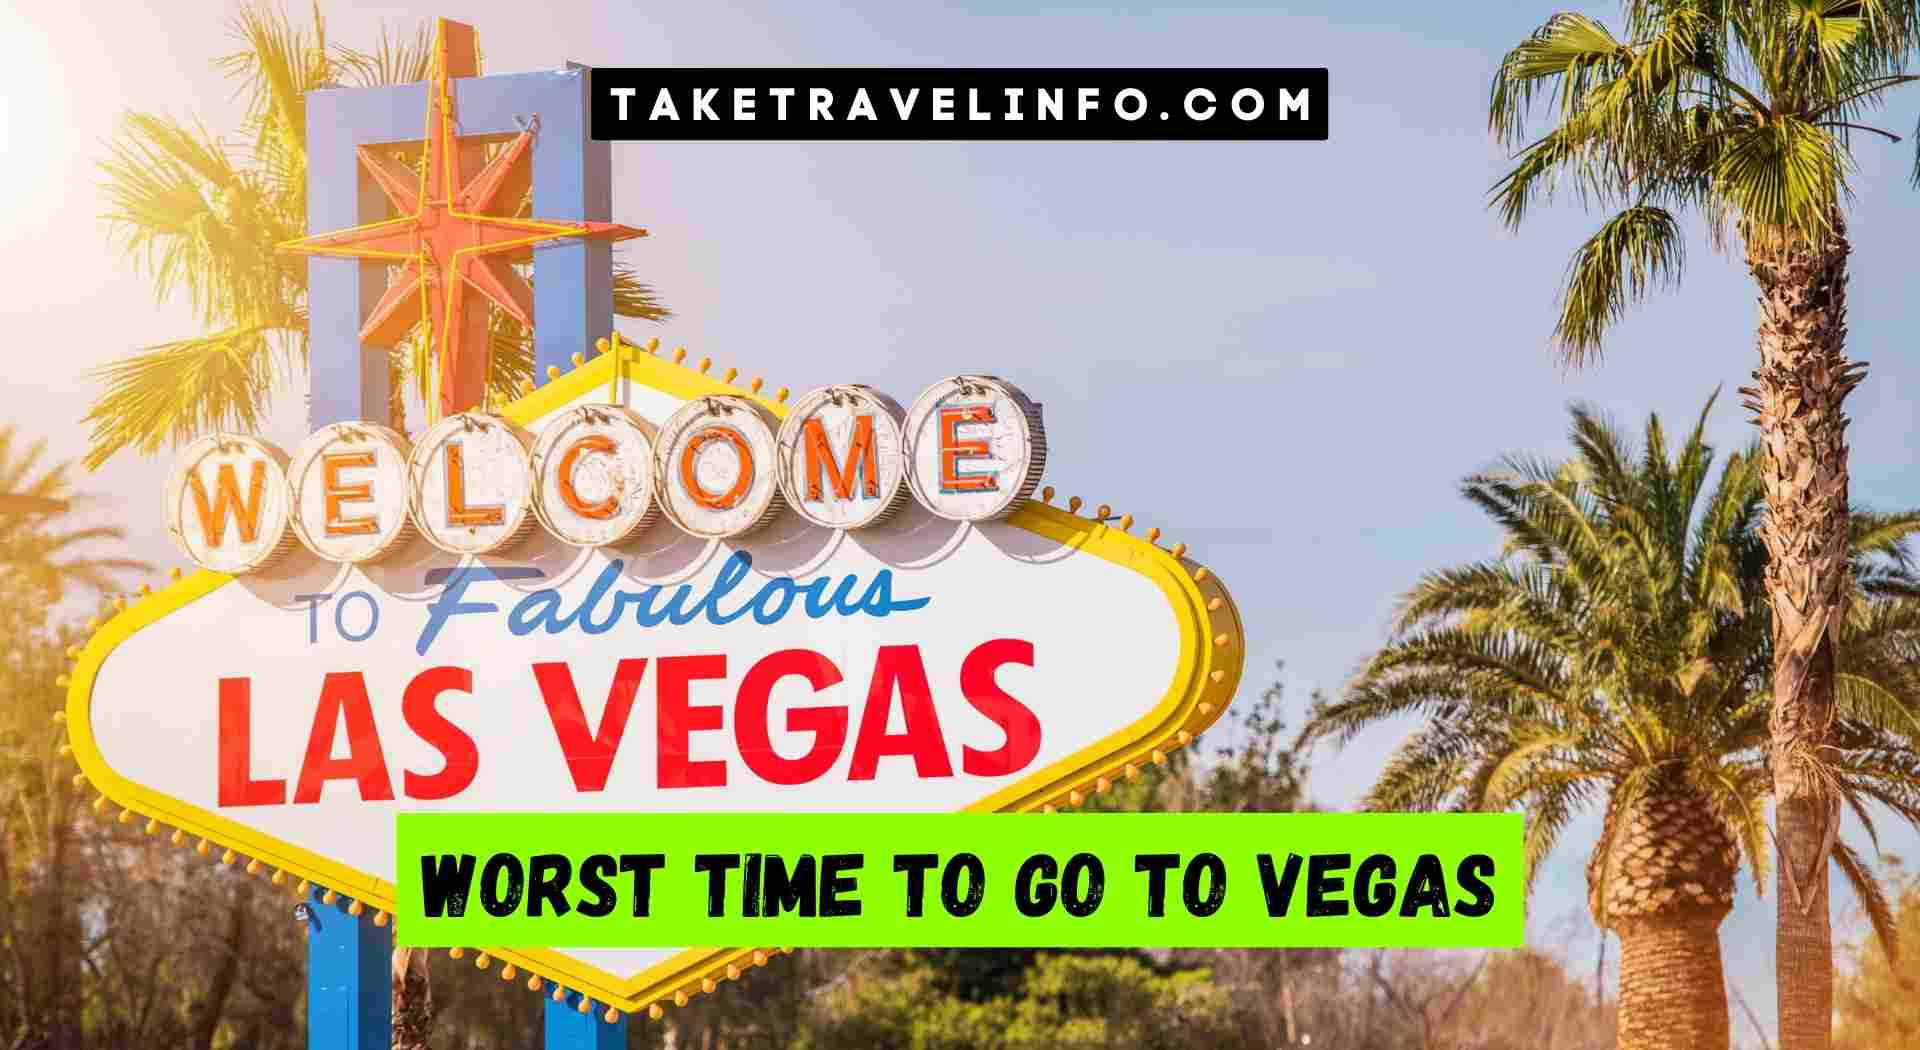 Worst Time to Go to Vegas